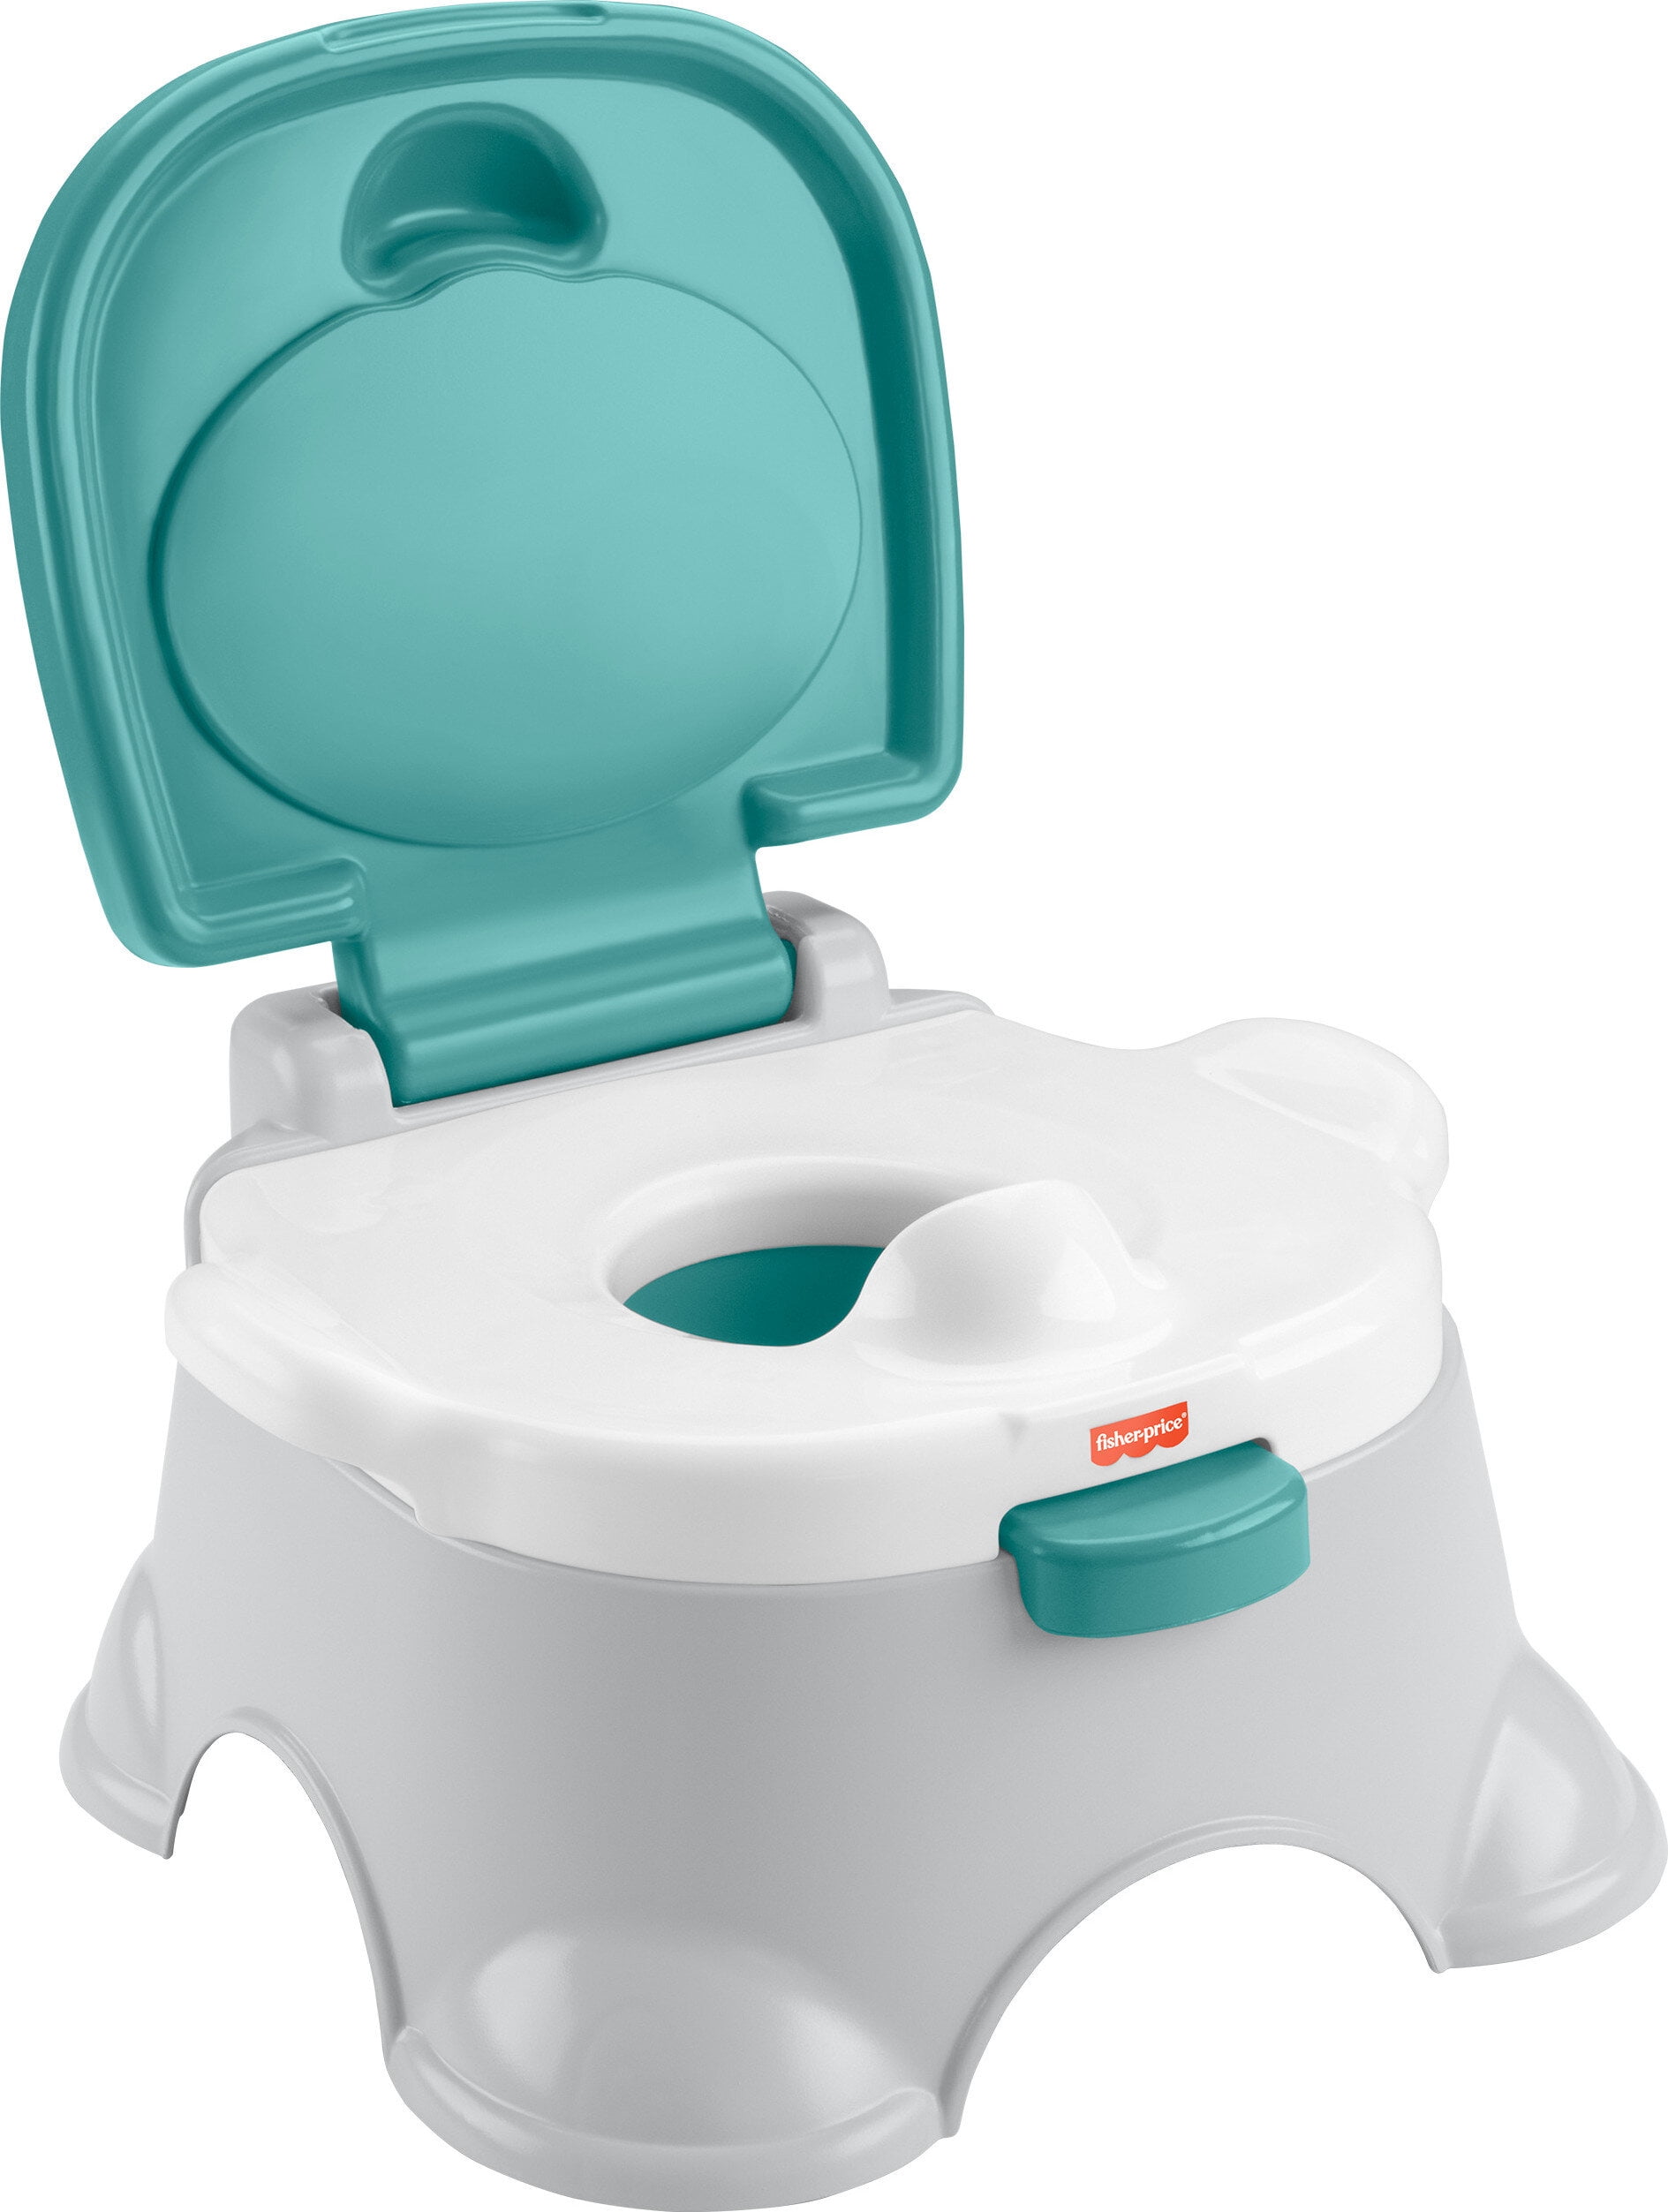 Reiziger Doe voorzichtig code Fisher-Price 3-in-1 Toddler Potty Training Toilet Ring and Stepstool -  Walmart.com